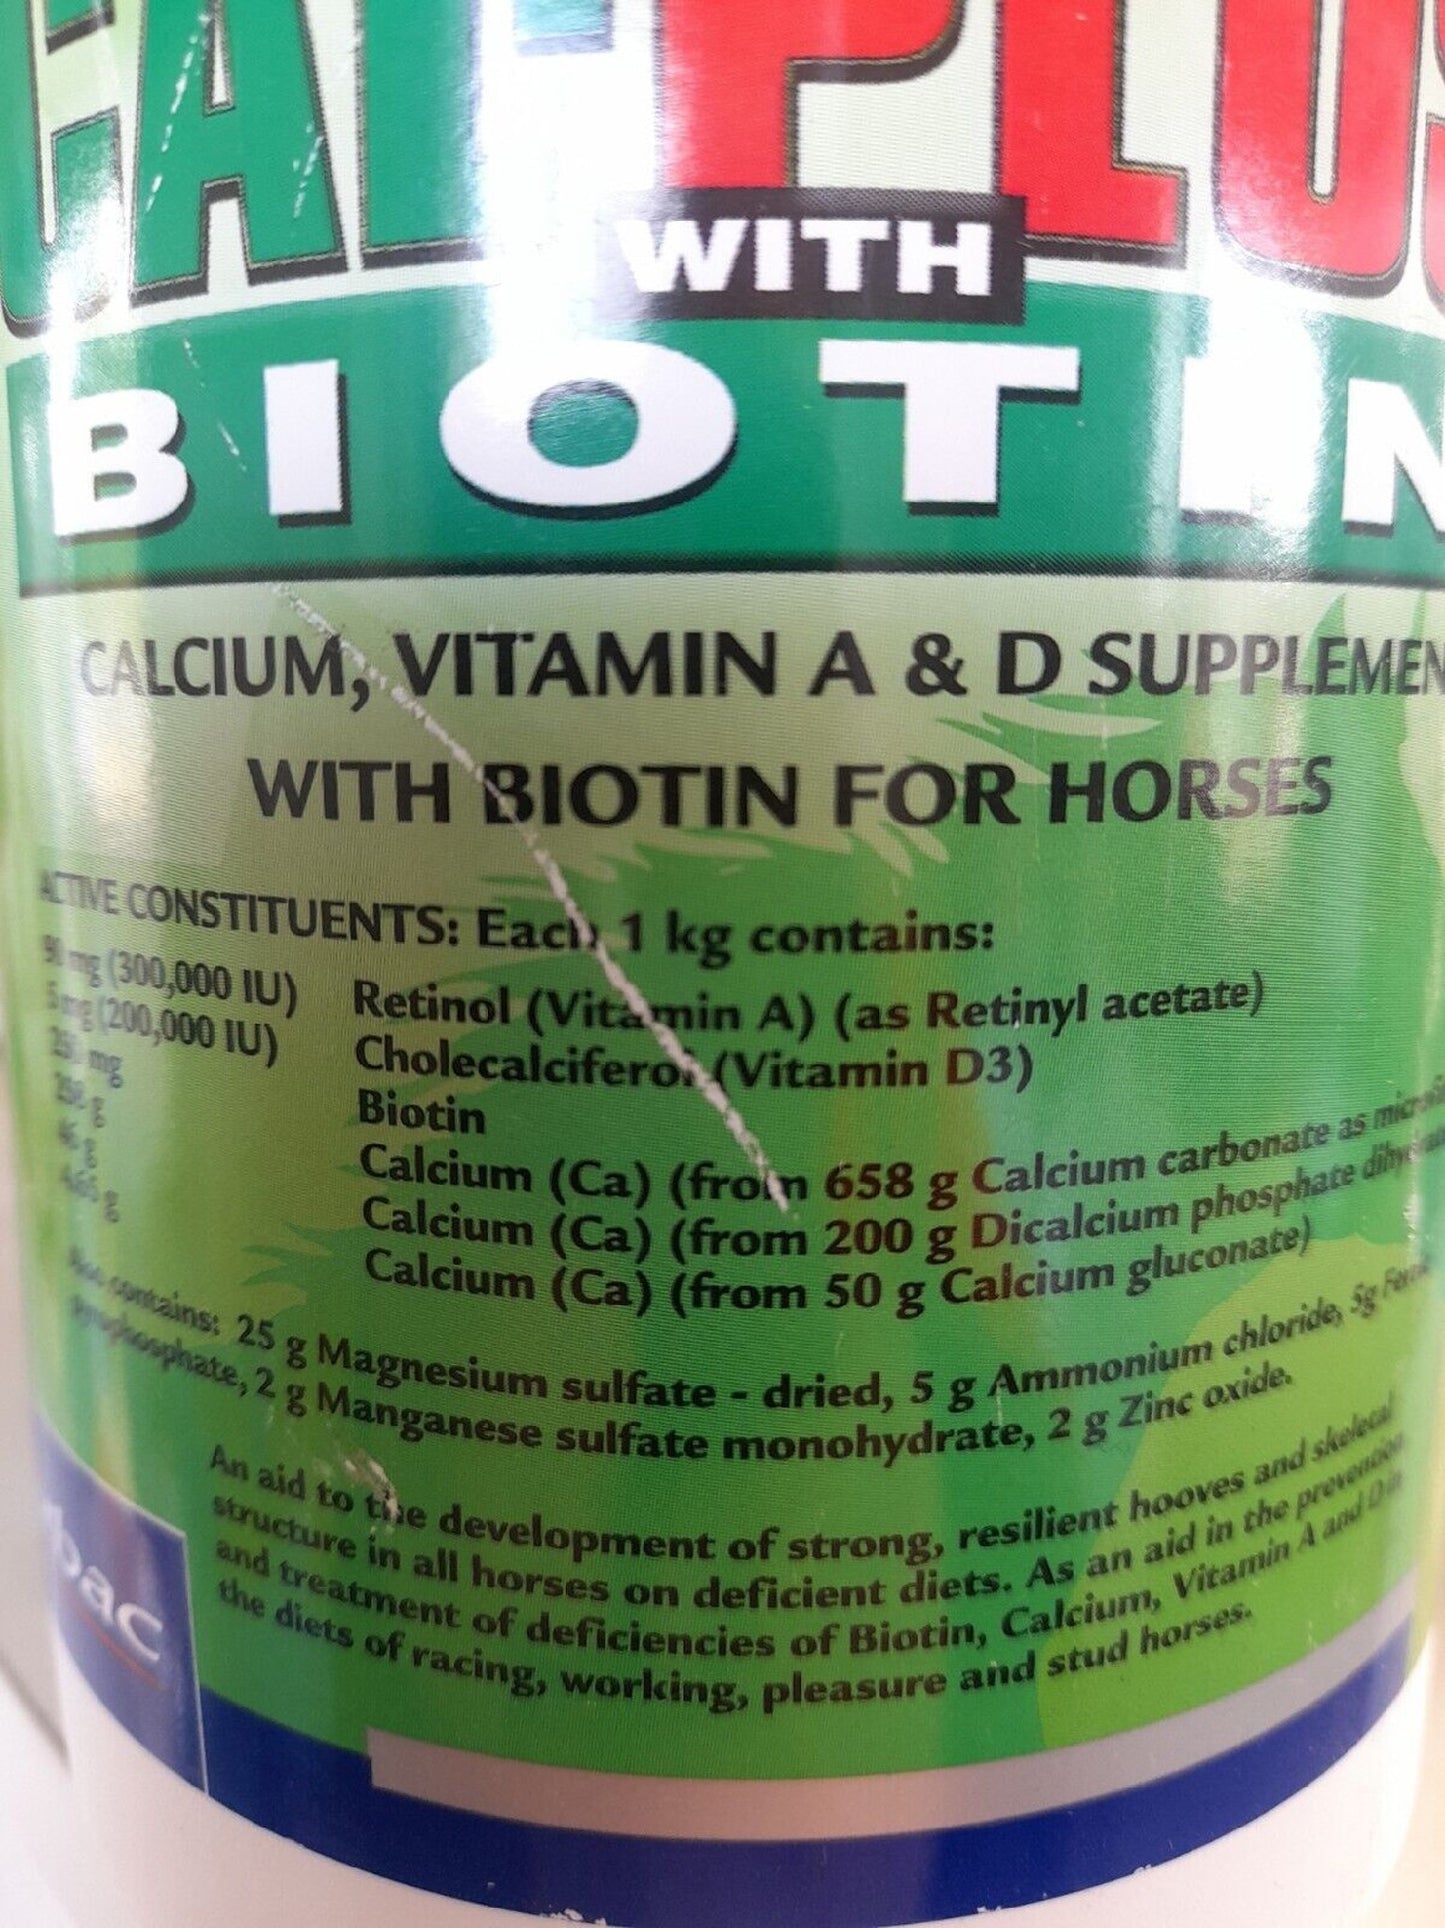 Virbac Cal-plus + Biotin 1.2kg